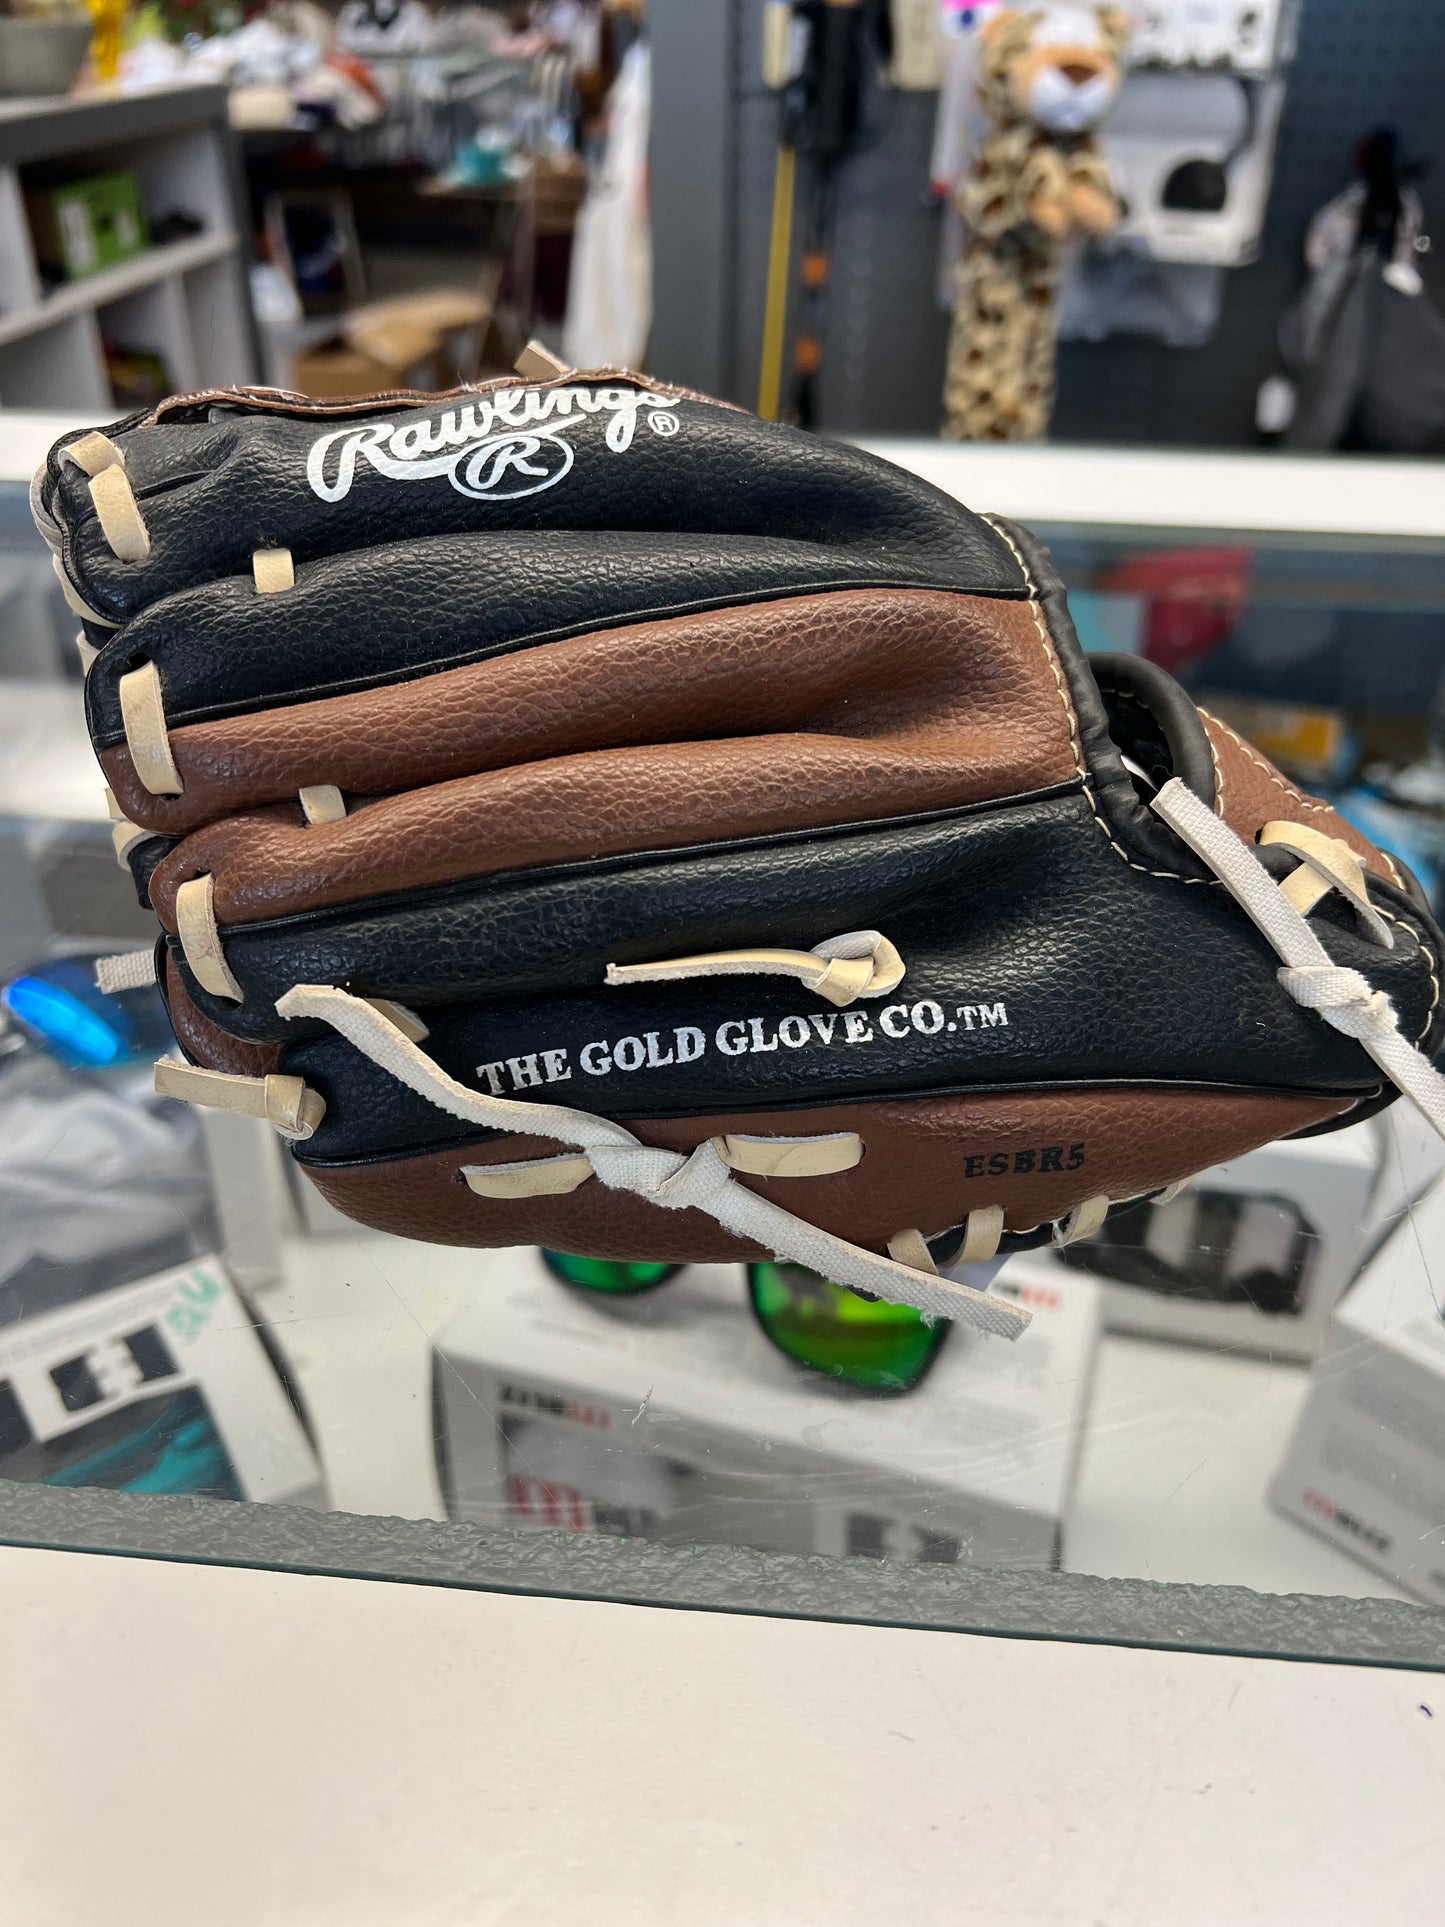 Raulings Baseball Glove